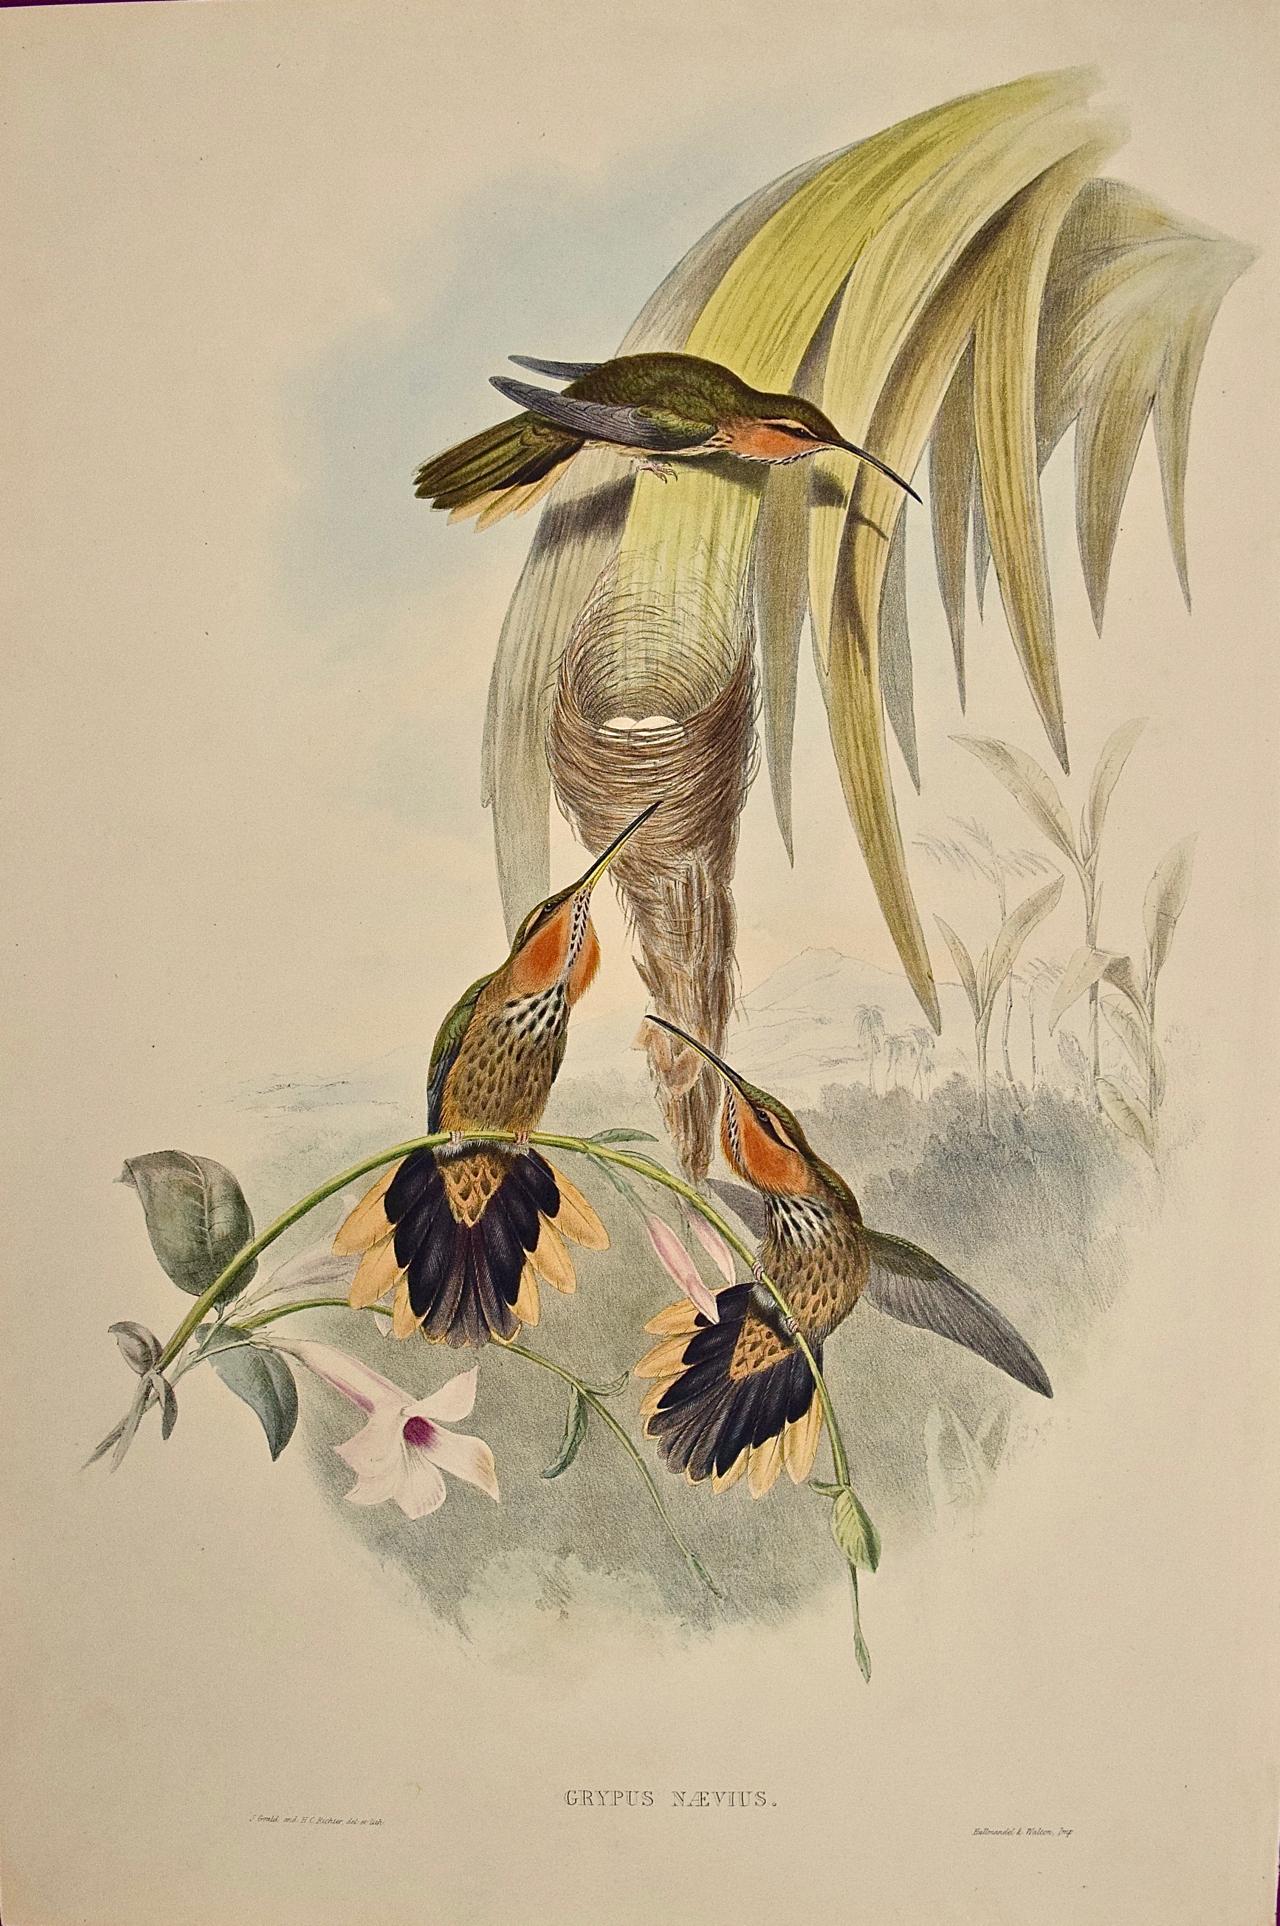 Landscape Print John Gould and Henry Constantine Richter - Grypus Naevius du 19ème siècle coloré à la main, oiseaux de chasse, nid et œufs